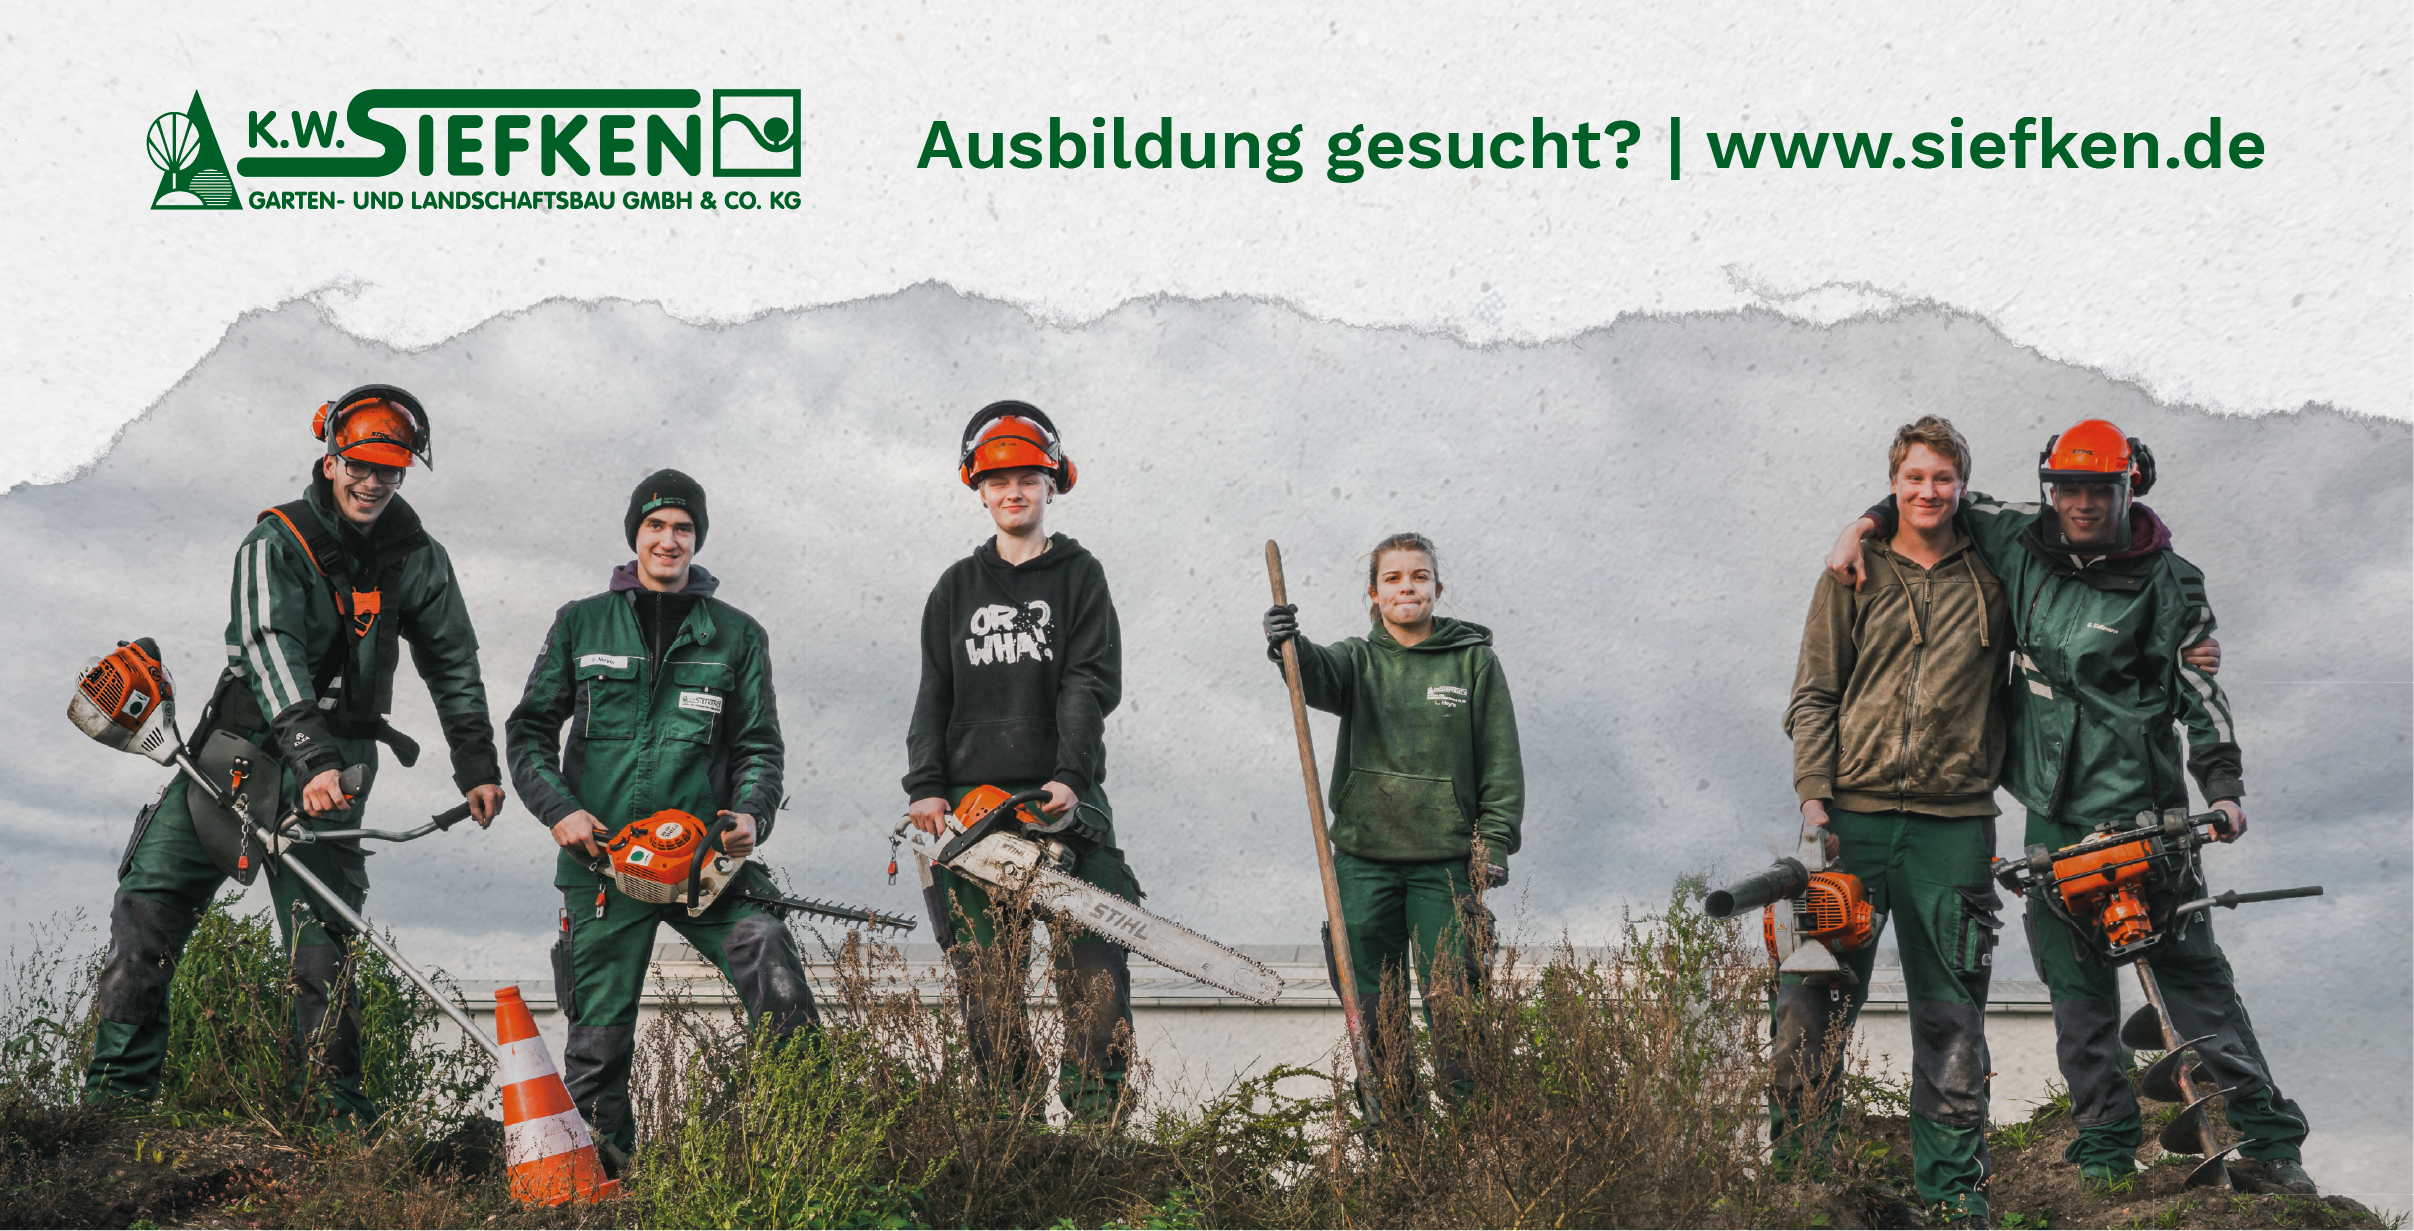 K.W. Siefken GmbH & Co. KG<br />Garten- und Landschaftsbau